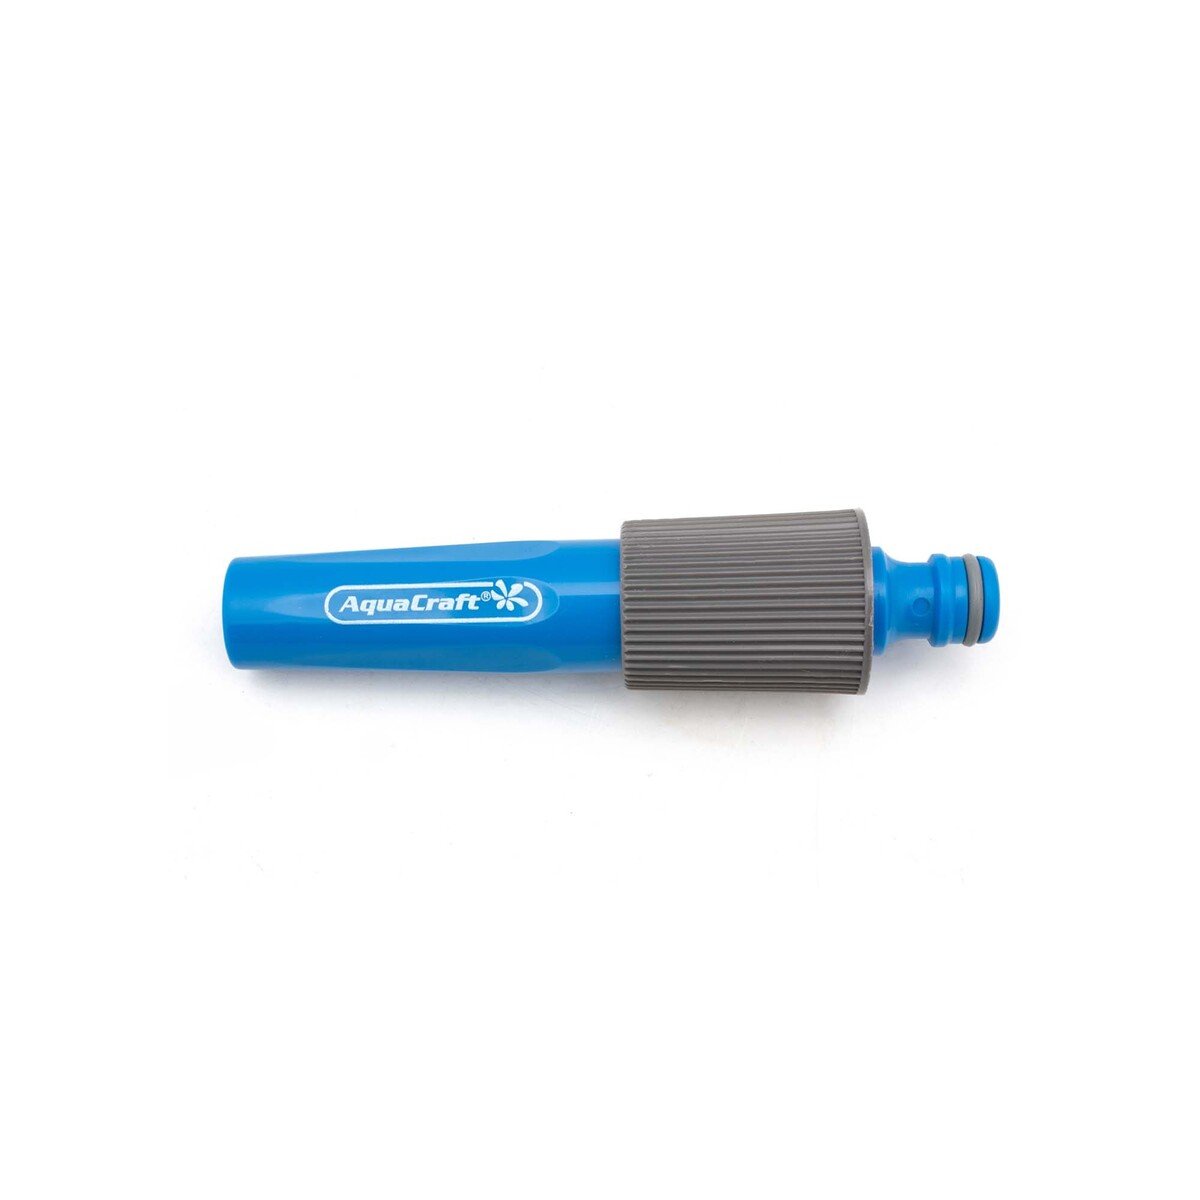 Aquacraft Water Spray Nozzle, Blue, 550070